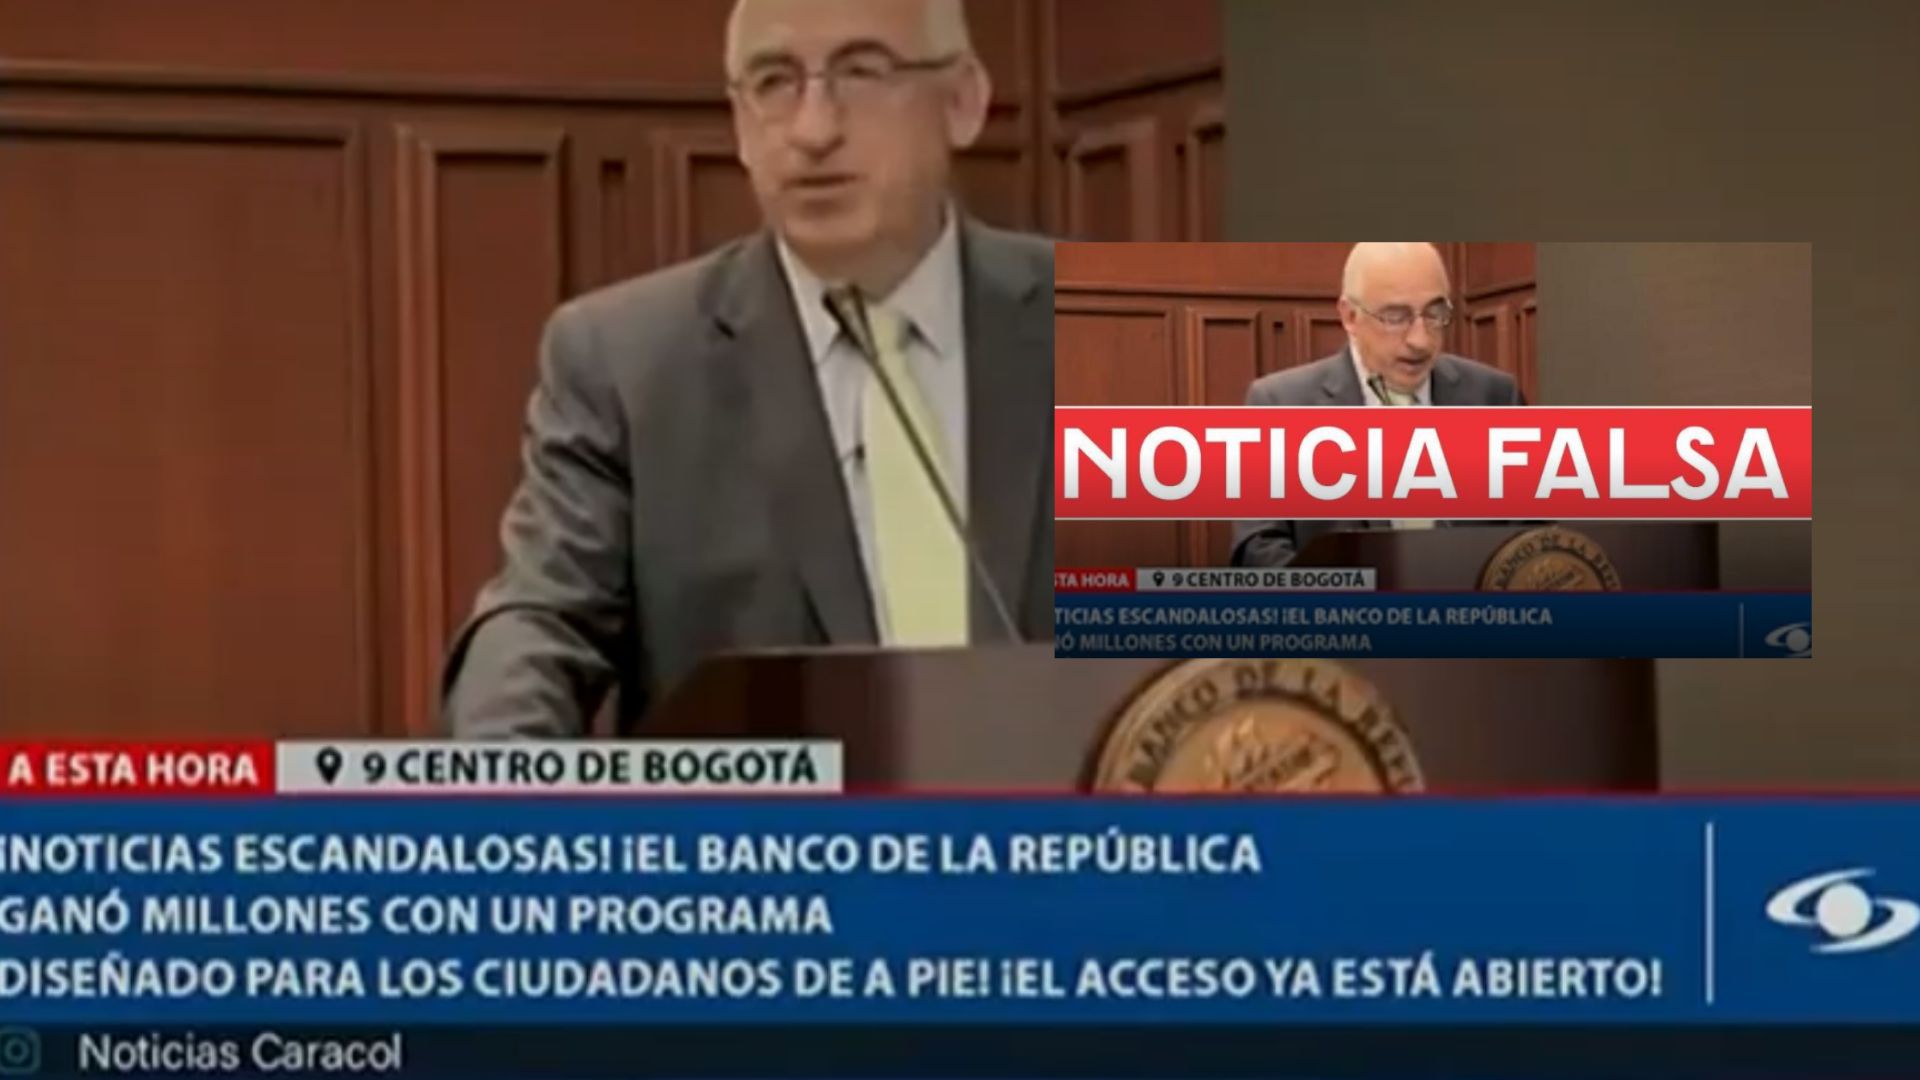 Imagen de noticia falsa por nota sobre advertencia del Banco de la República